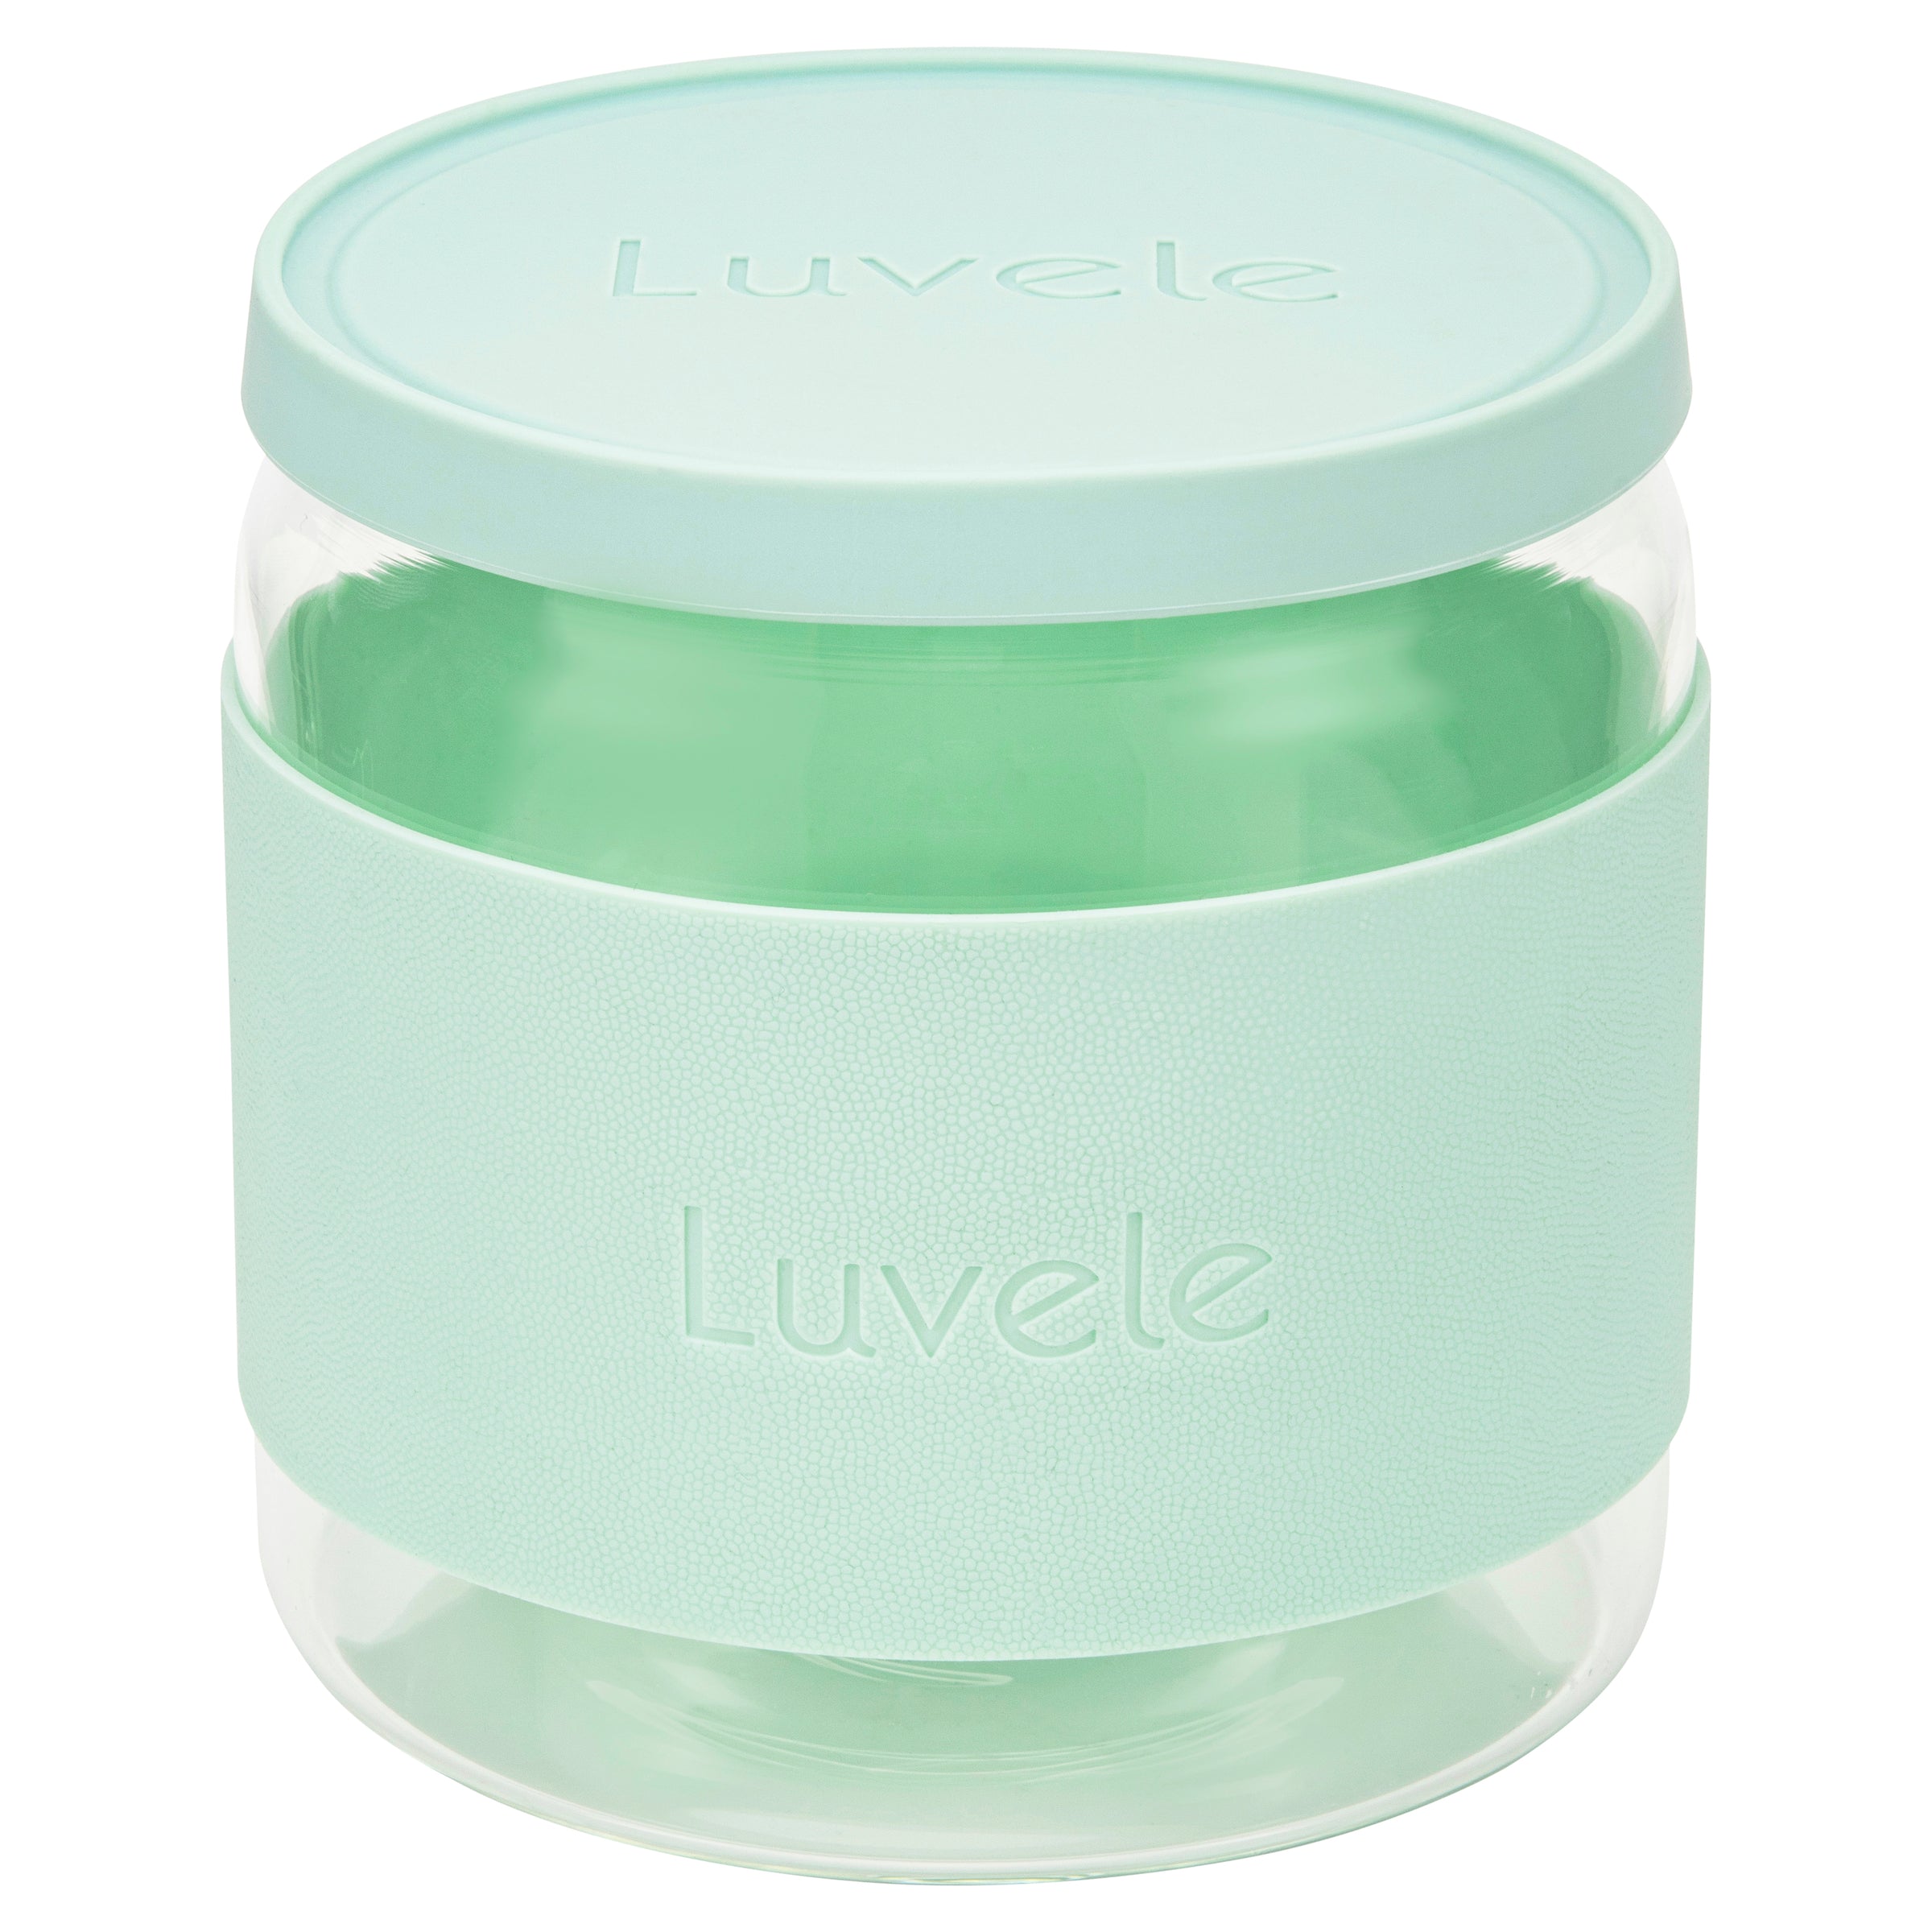 Luvele 2 Litre, (2.1qt.) Glass Yogurt Container